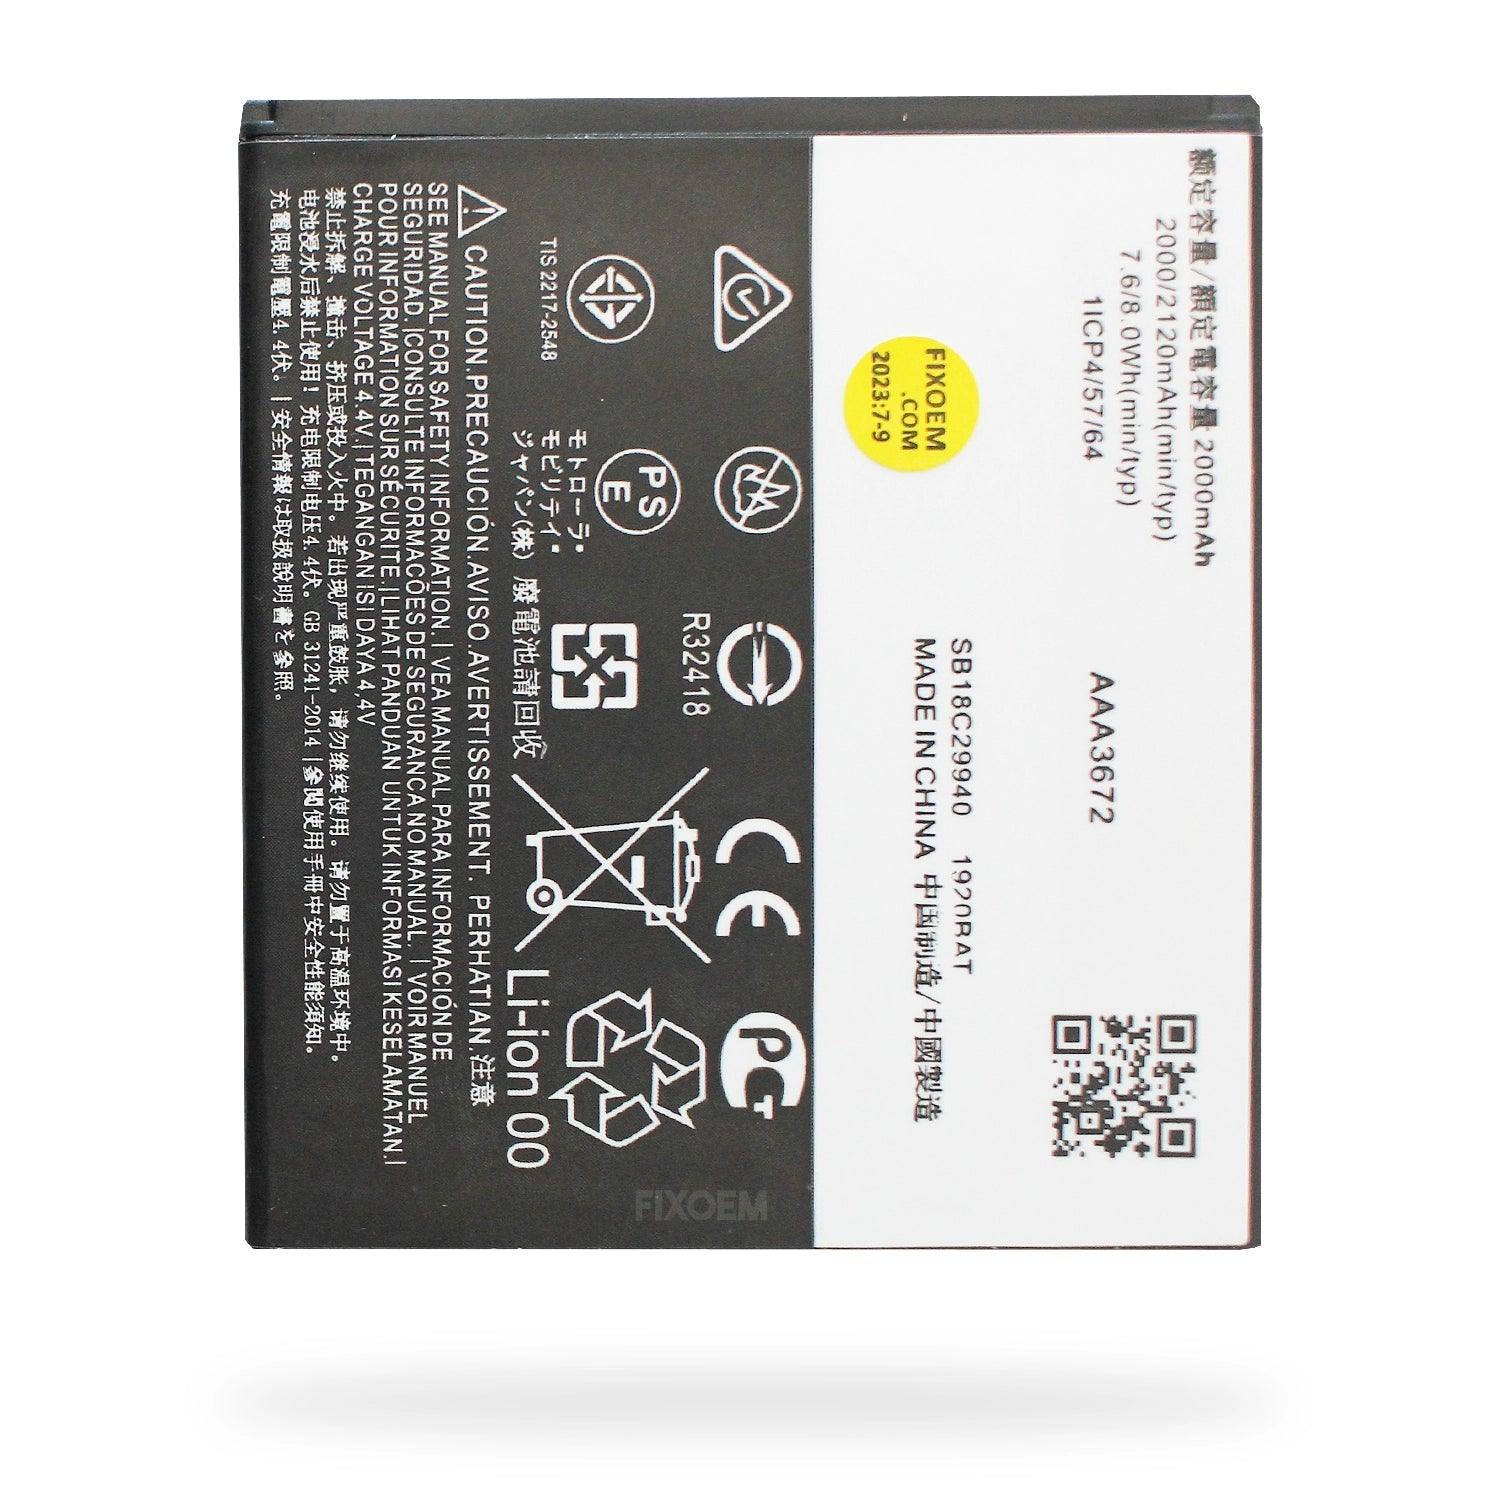 Bateria Moto E5 Play GO Xt1920-18 JE30 a solo $ 100.00 Refaccion y puestos celulares, refurbish y microelectronica.- FixOEM